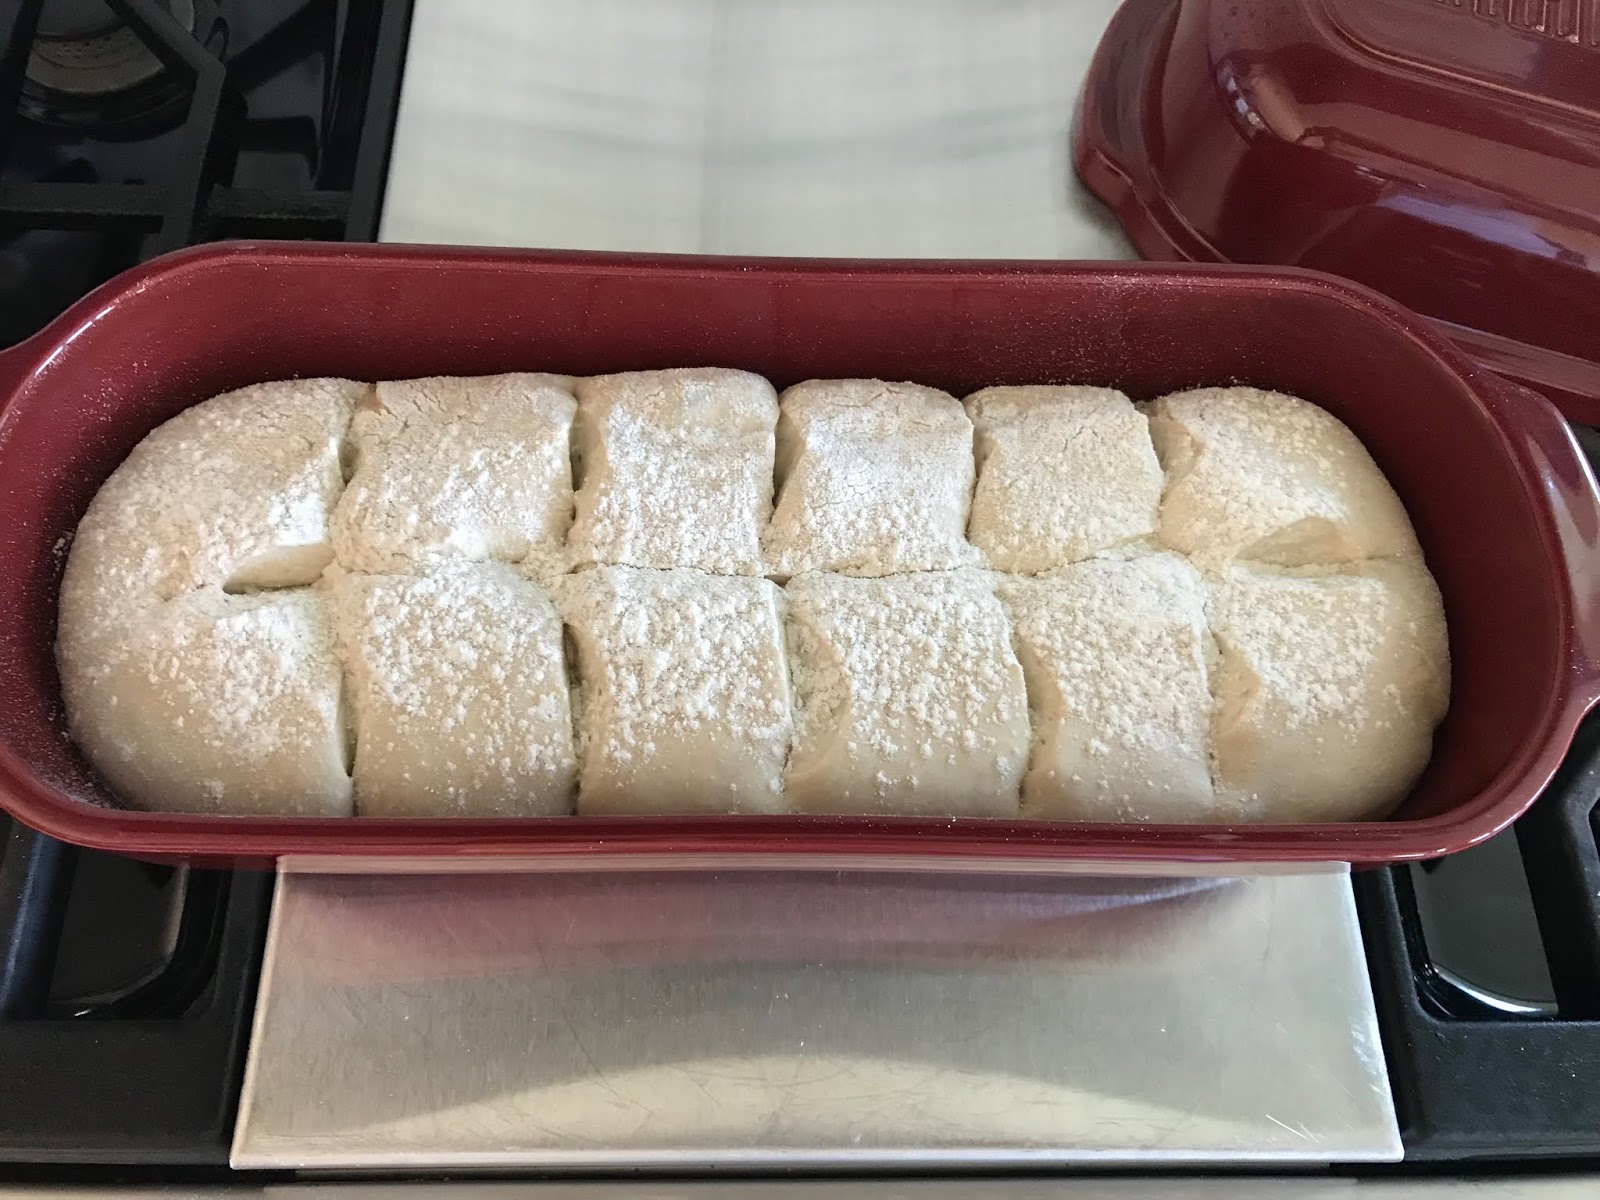 Large Bread Loaf Baker - Emile Henry